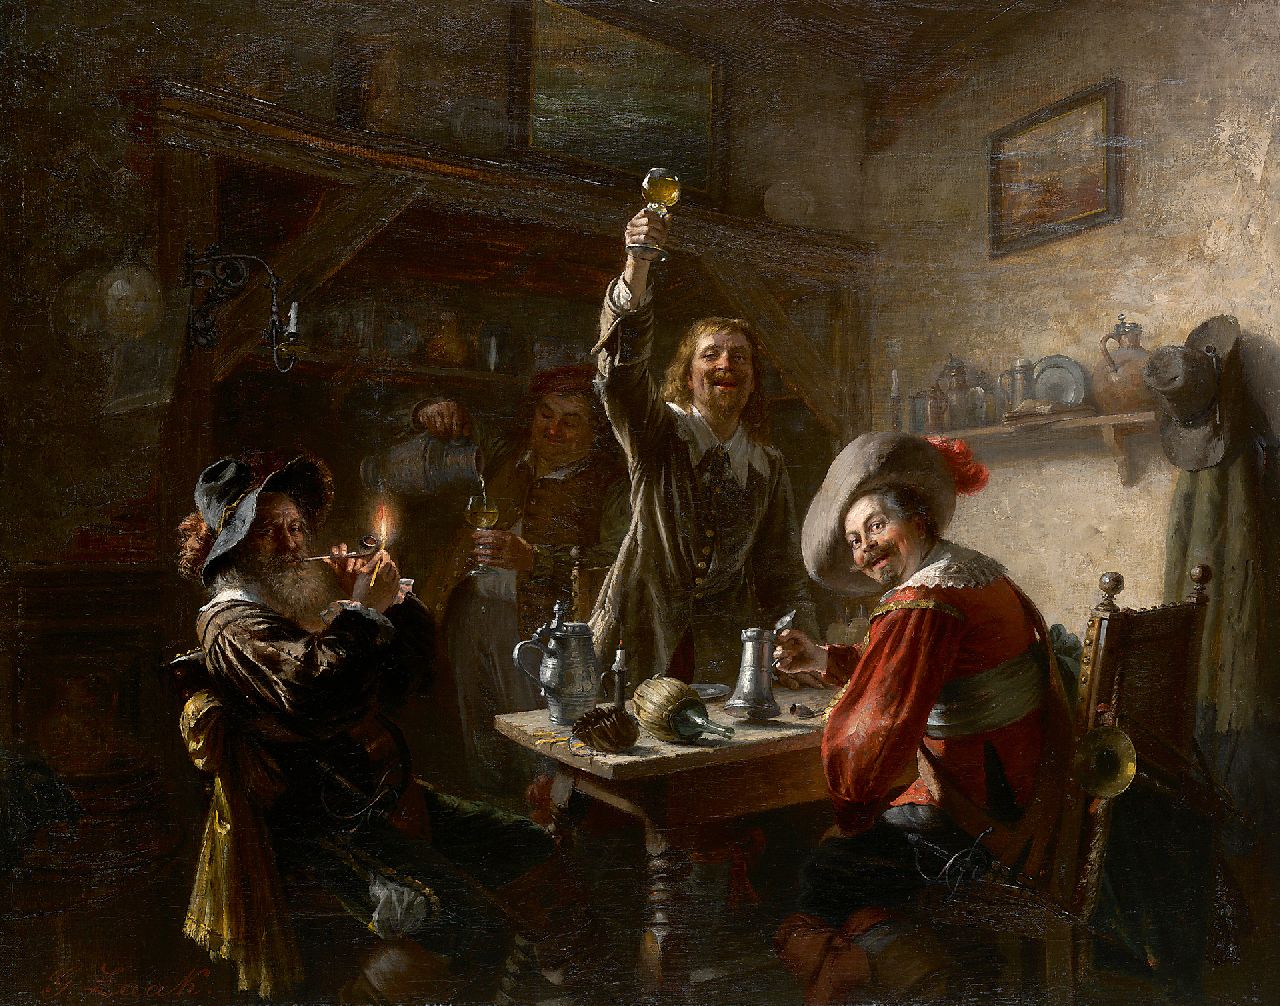 Zaak G.  | Gustav Zaak, De vrolijke drinkers, olieverf op doek 55,5 x 68,0 cm, gesigneerd linksonder